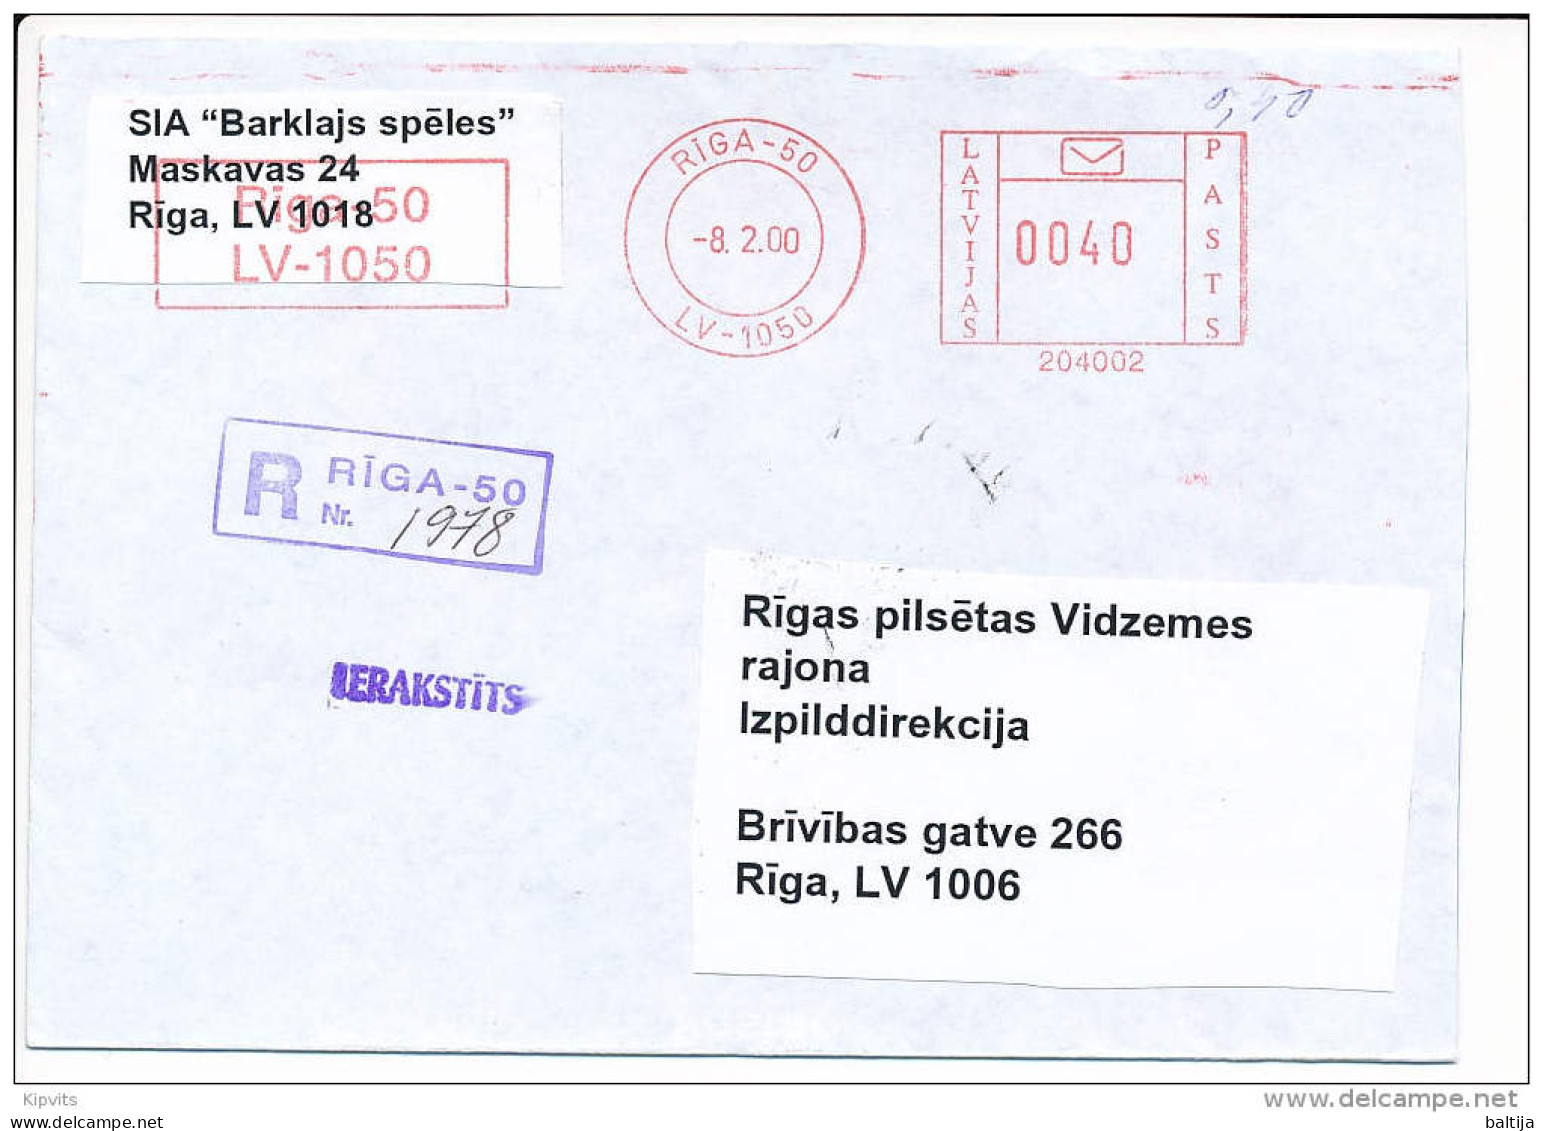 Registered Post Office Meter Cover / 204002 - 8 February 2000 Riga-50 - Latvia